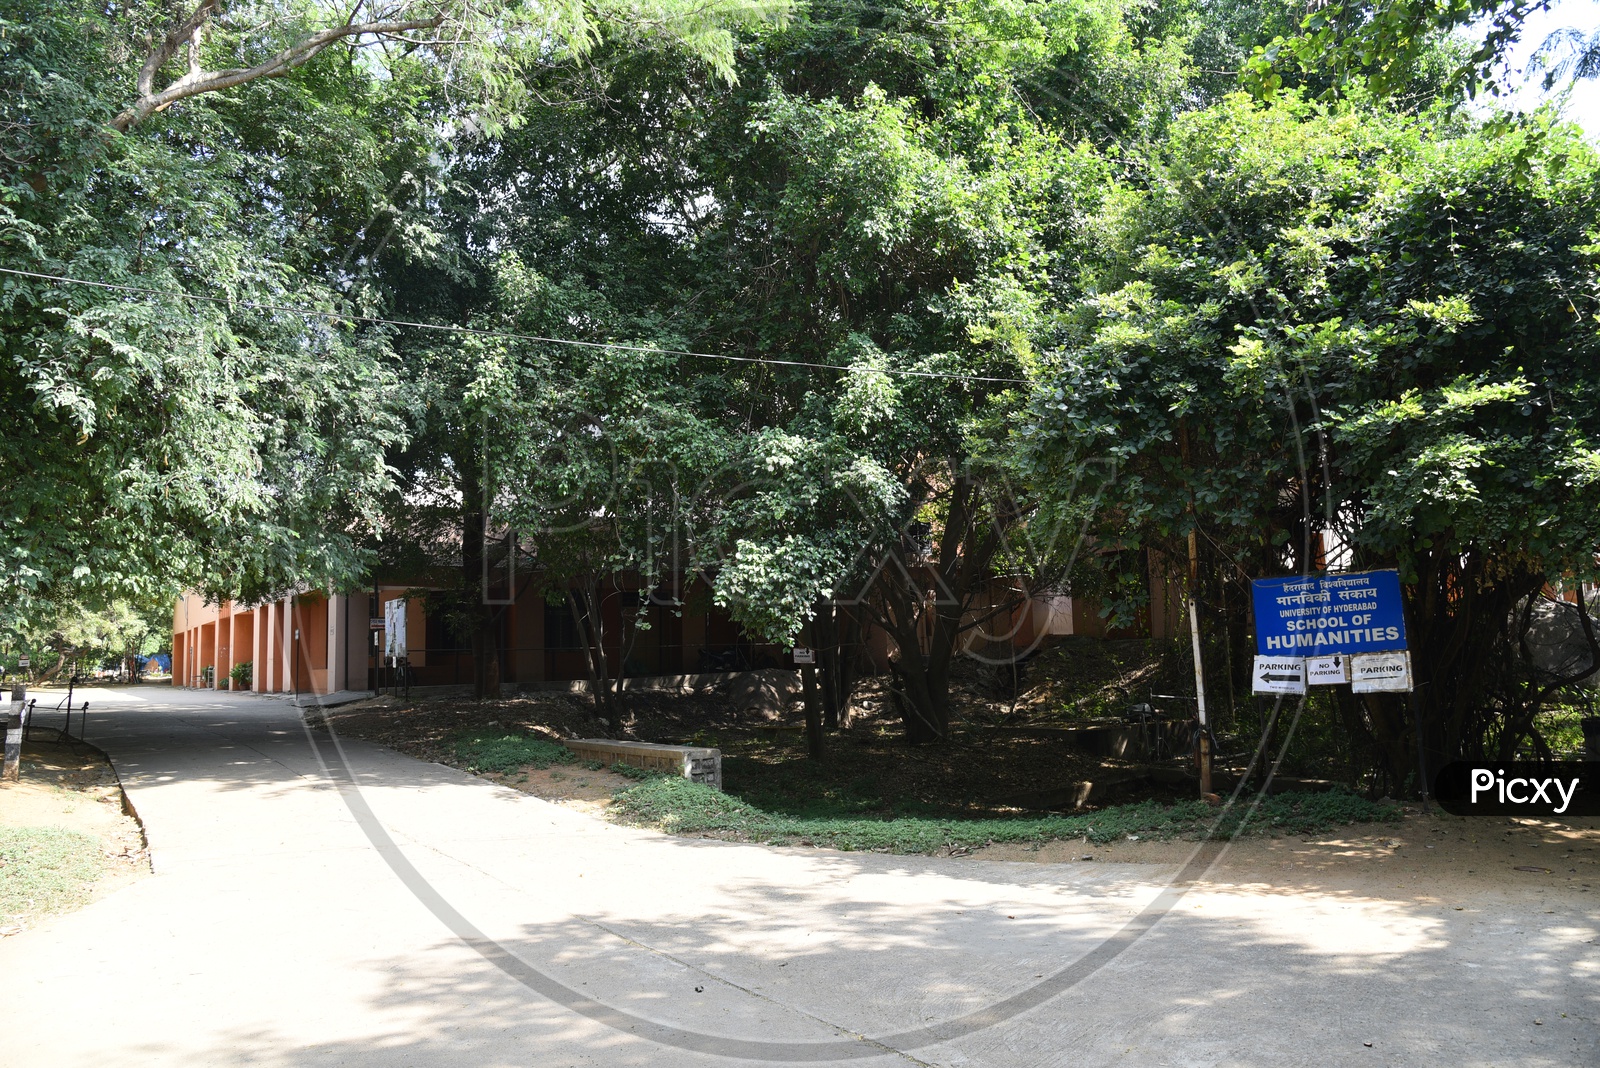 School of Humanities in University of Hyderabad